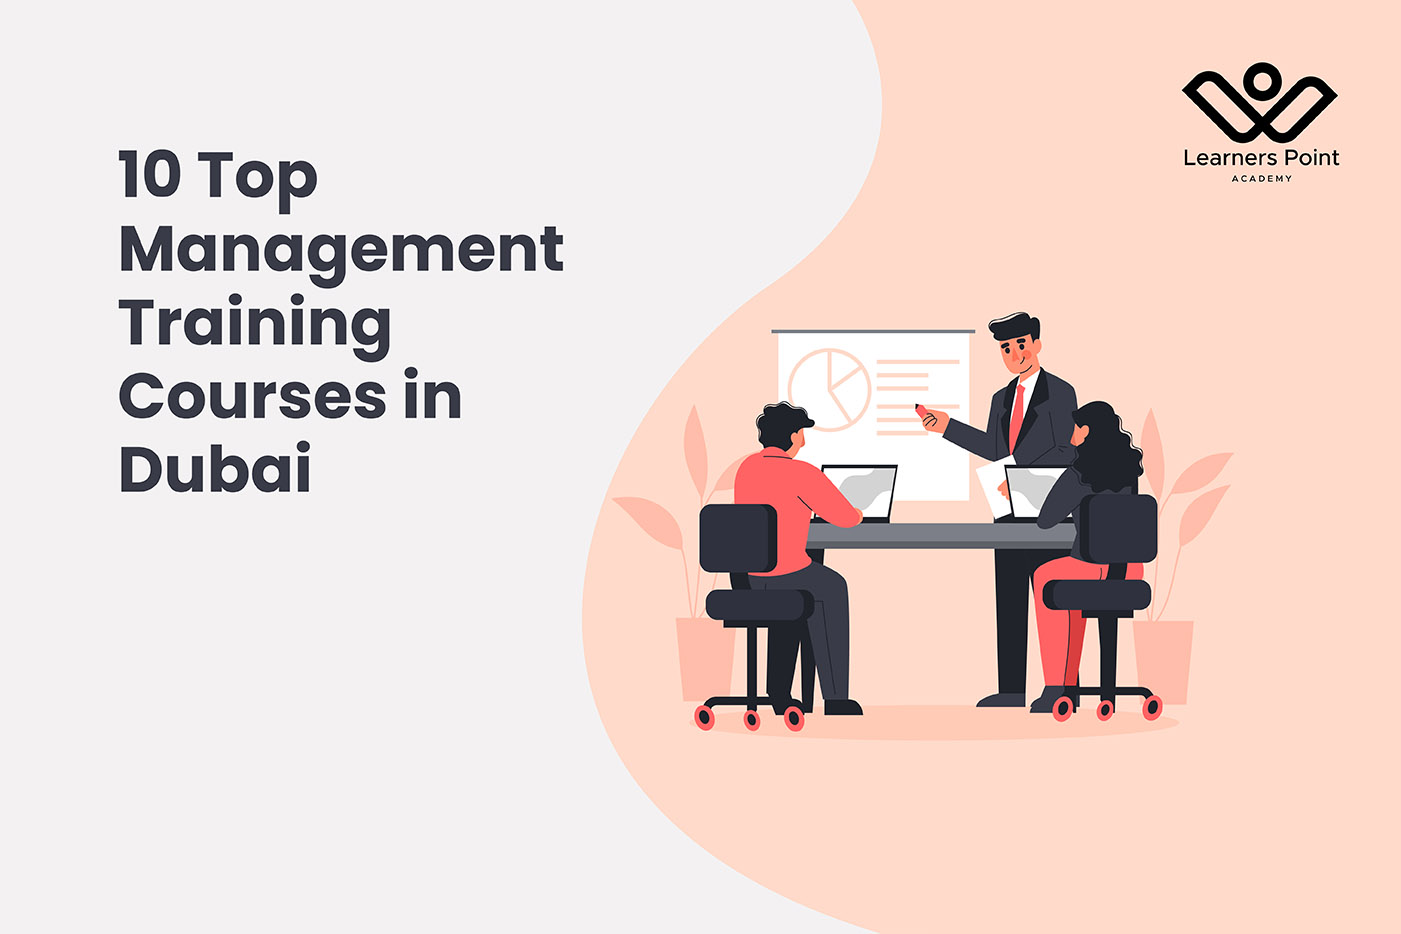 10 Top Management Training Courses in Dubai